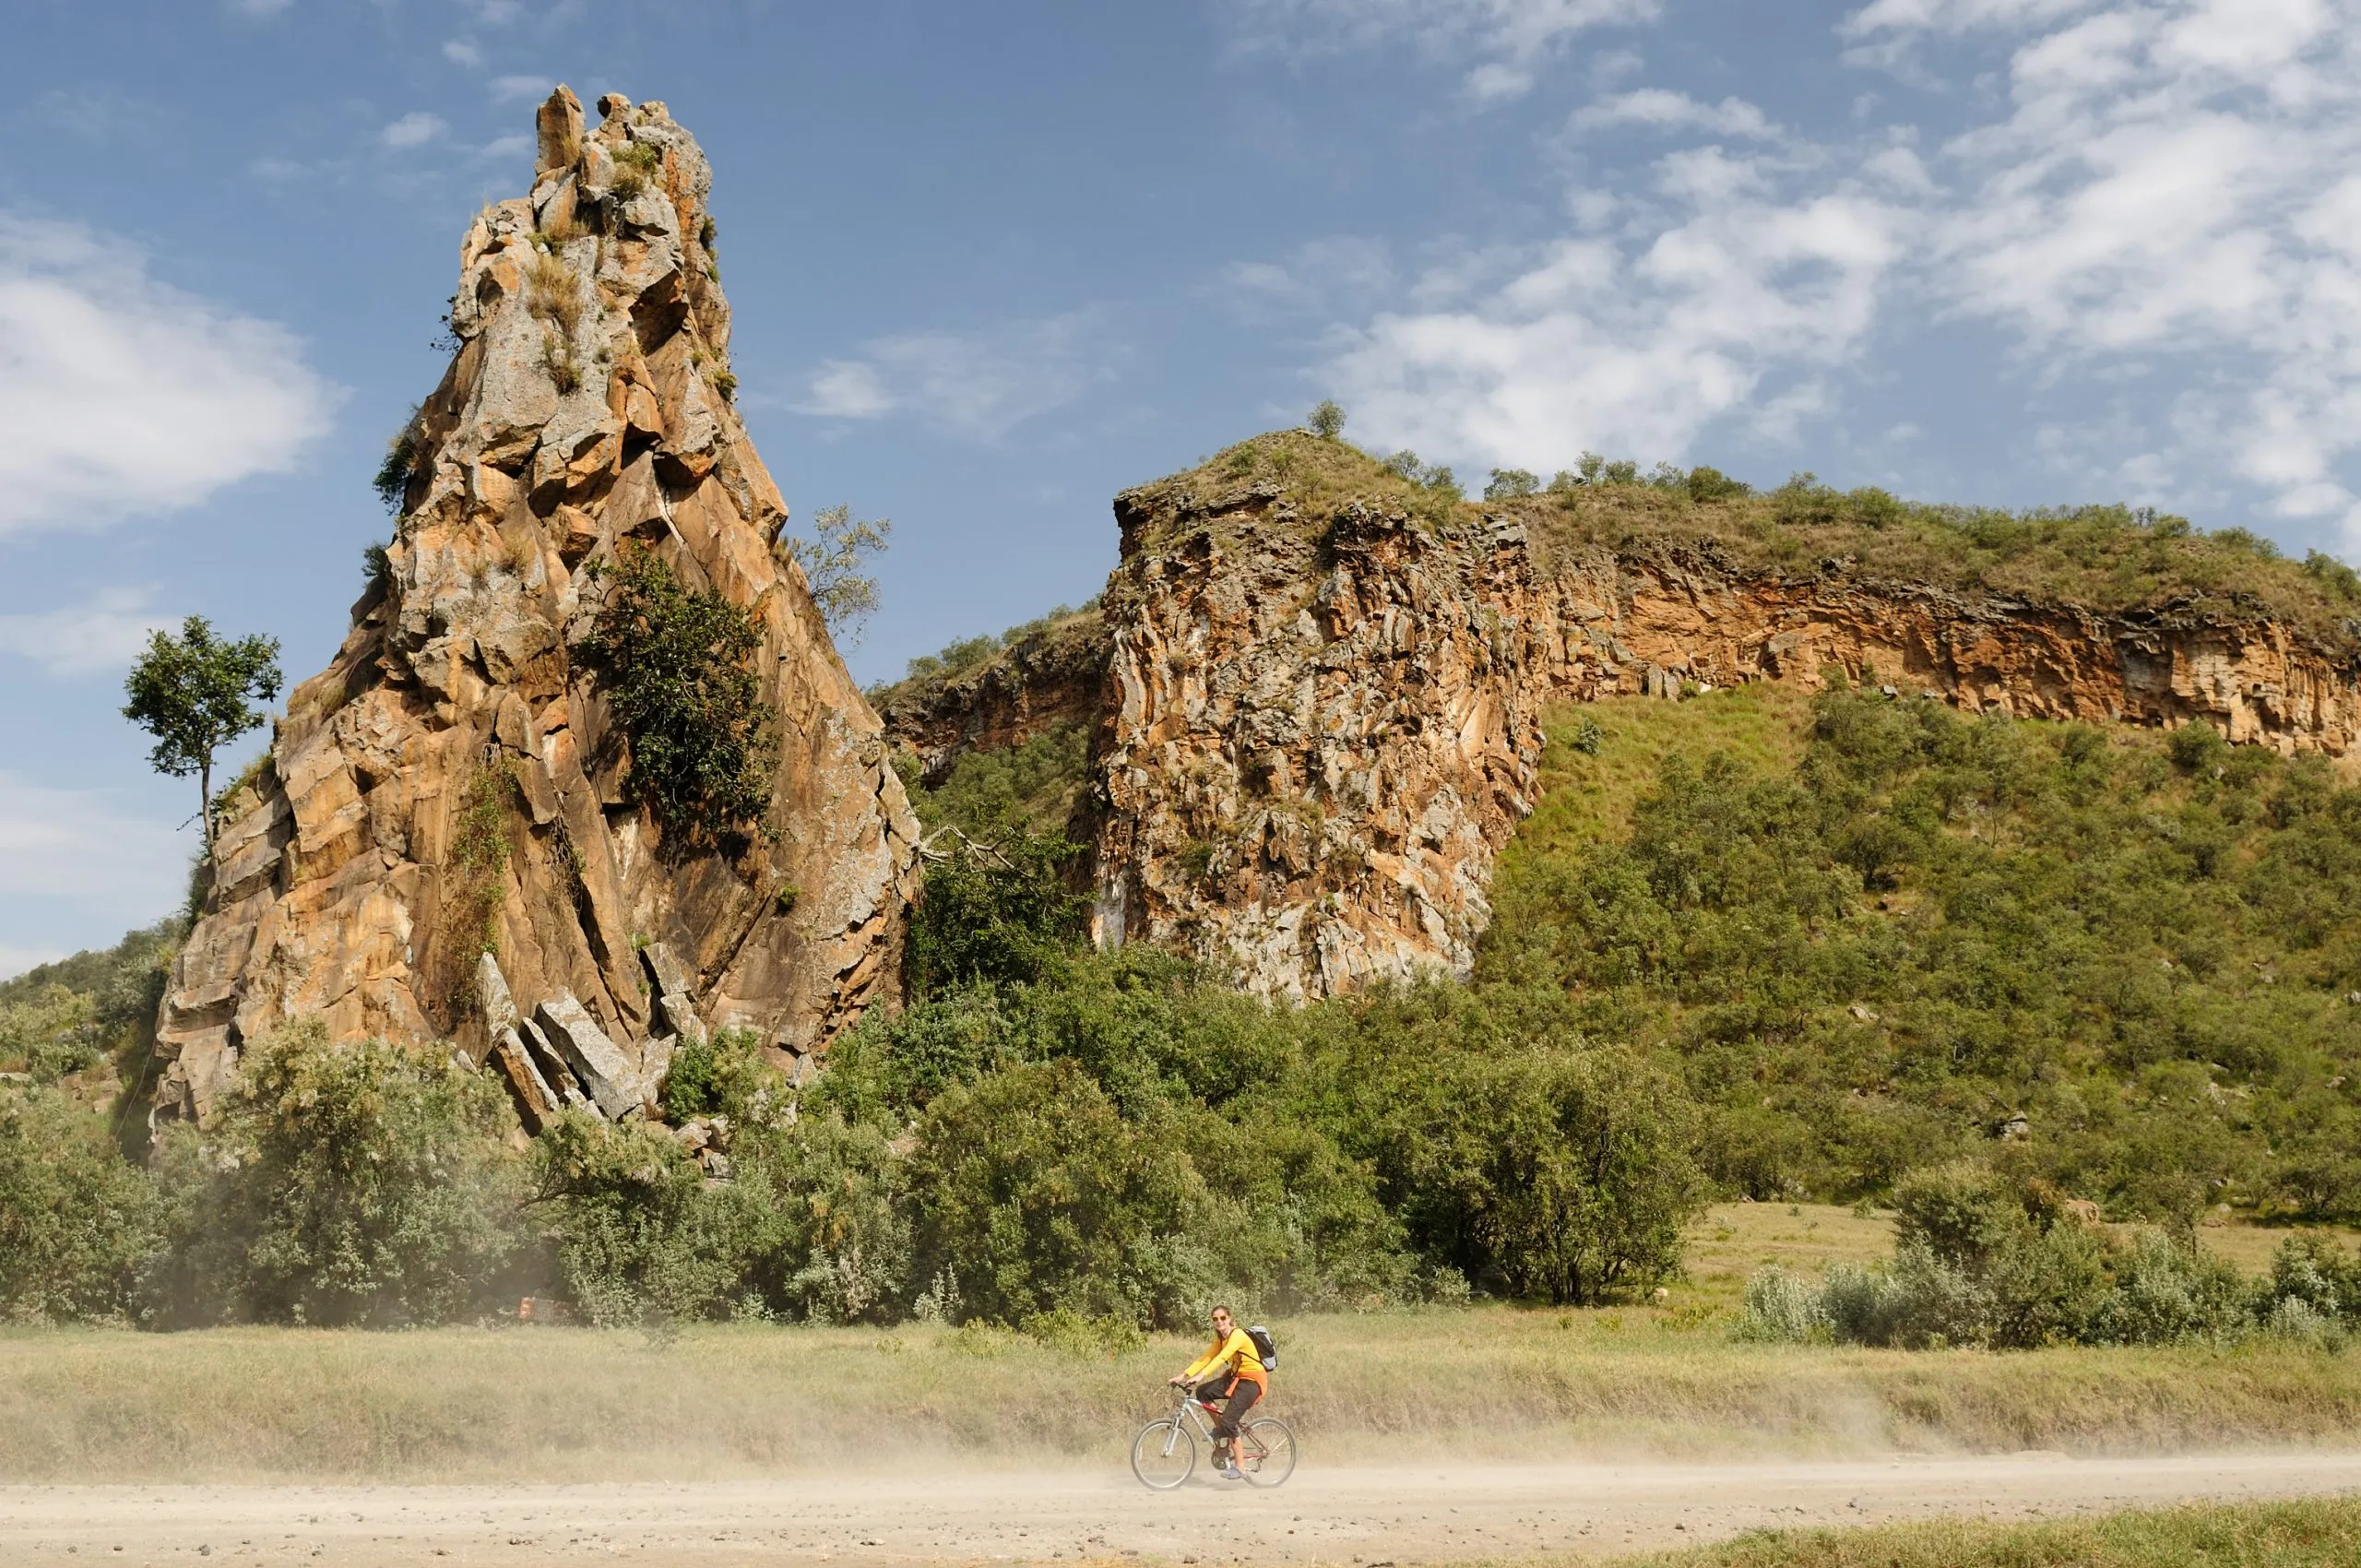 Il turista pedala ai piedi delle torri di roccia Stark nel Parco Nazionale di Hells Gate in Kenya